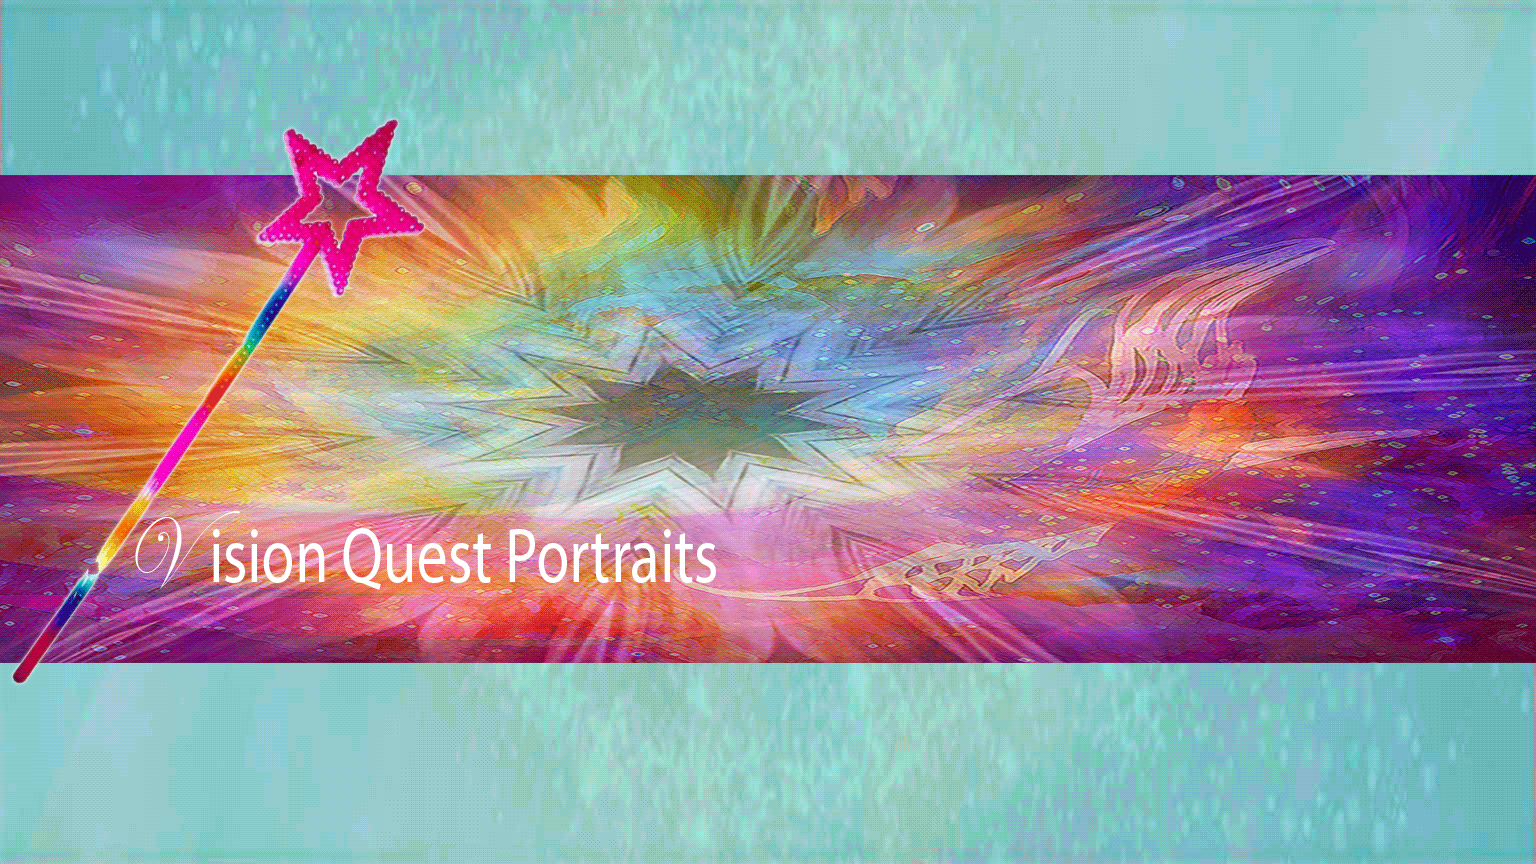 Vision Quest Portraits